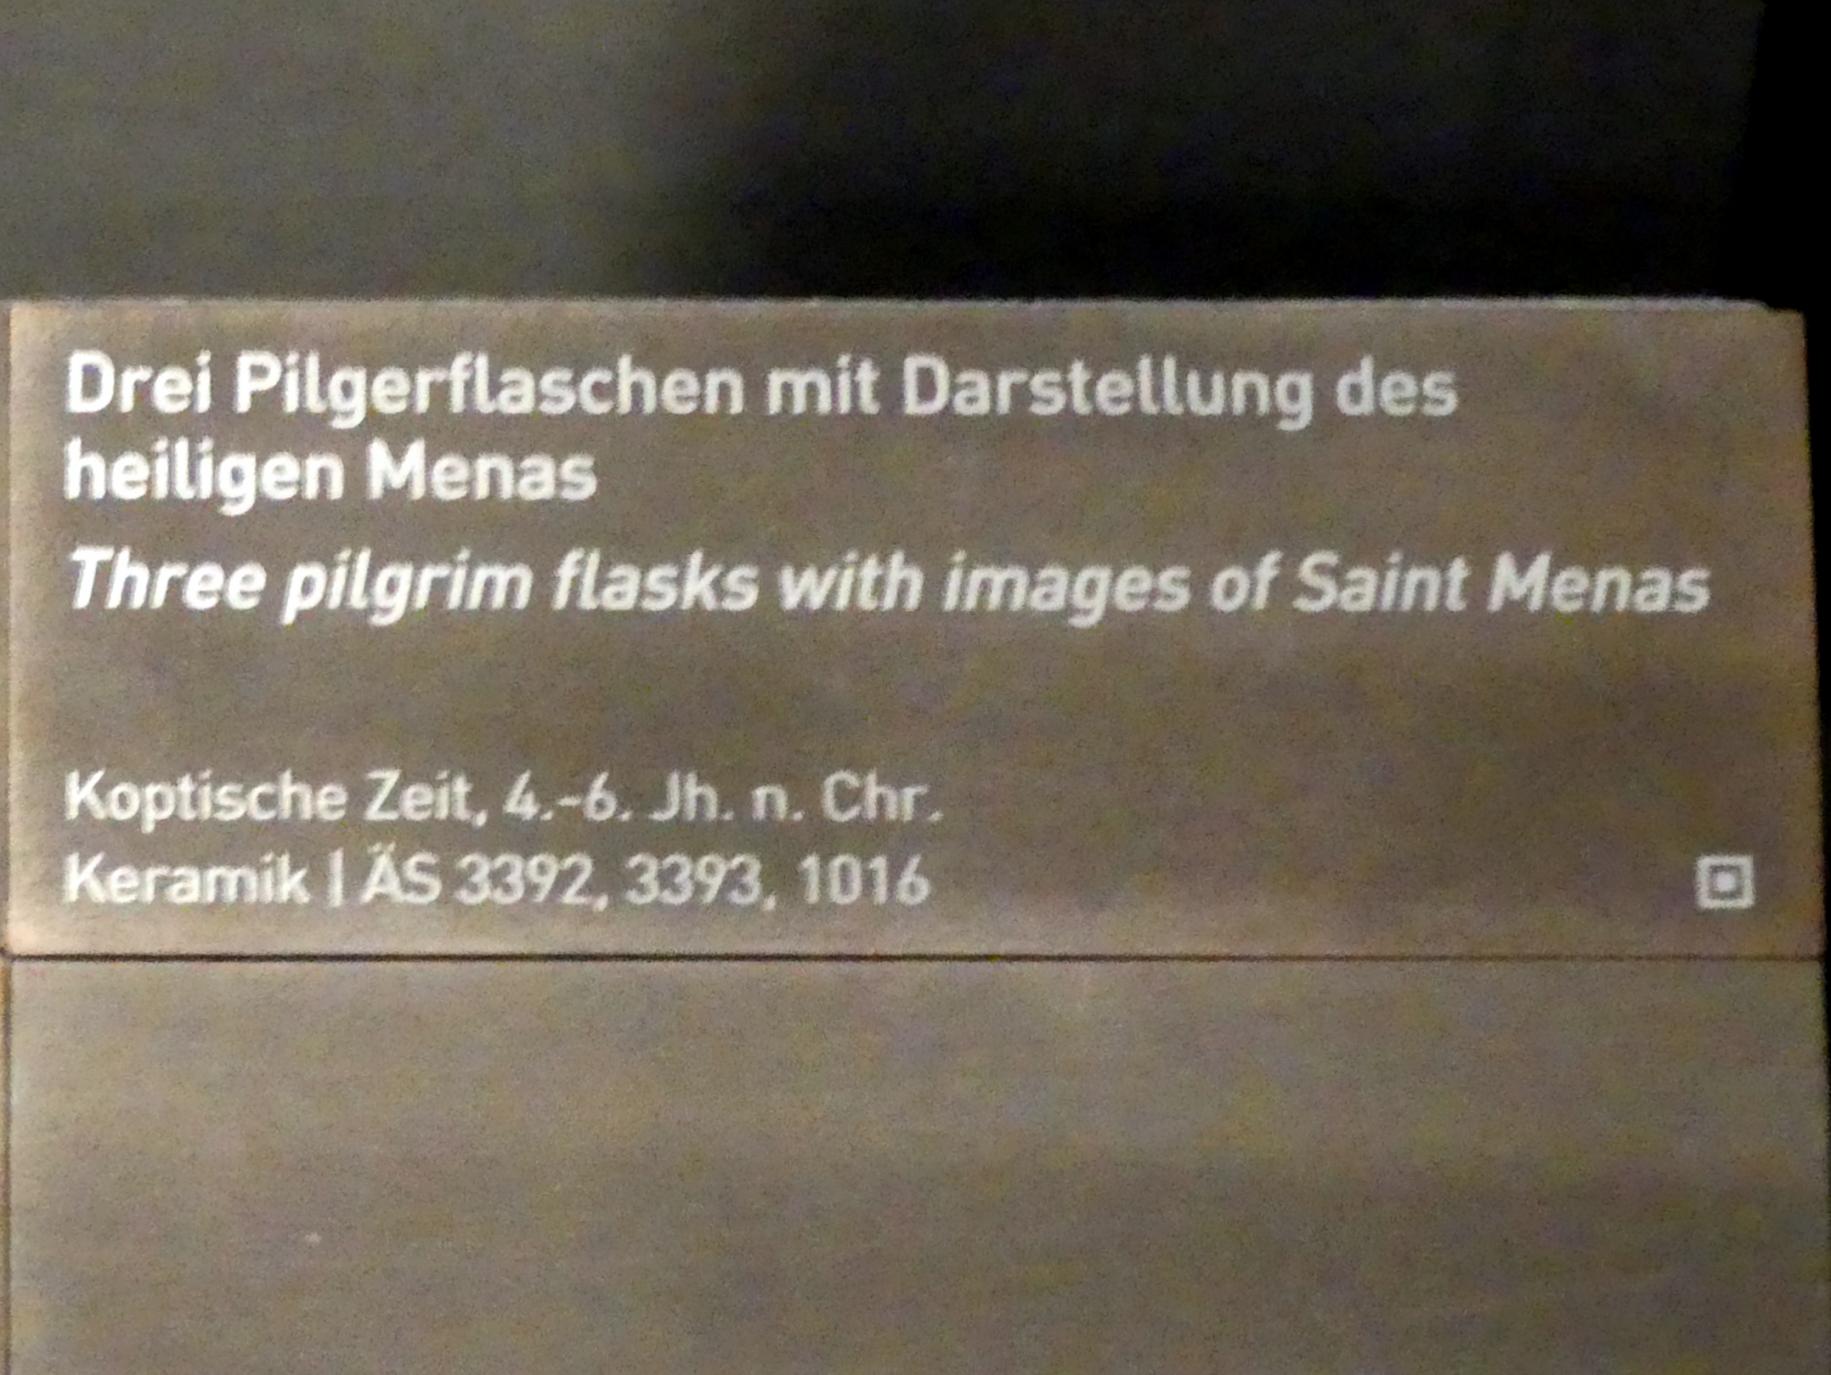 Drei Pilgerflaschen mit Darstellung des heiligen Menas, Koptische Zeit, 200 - 800, 300 - 600, Bild 2/2